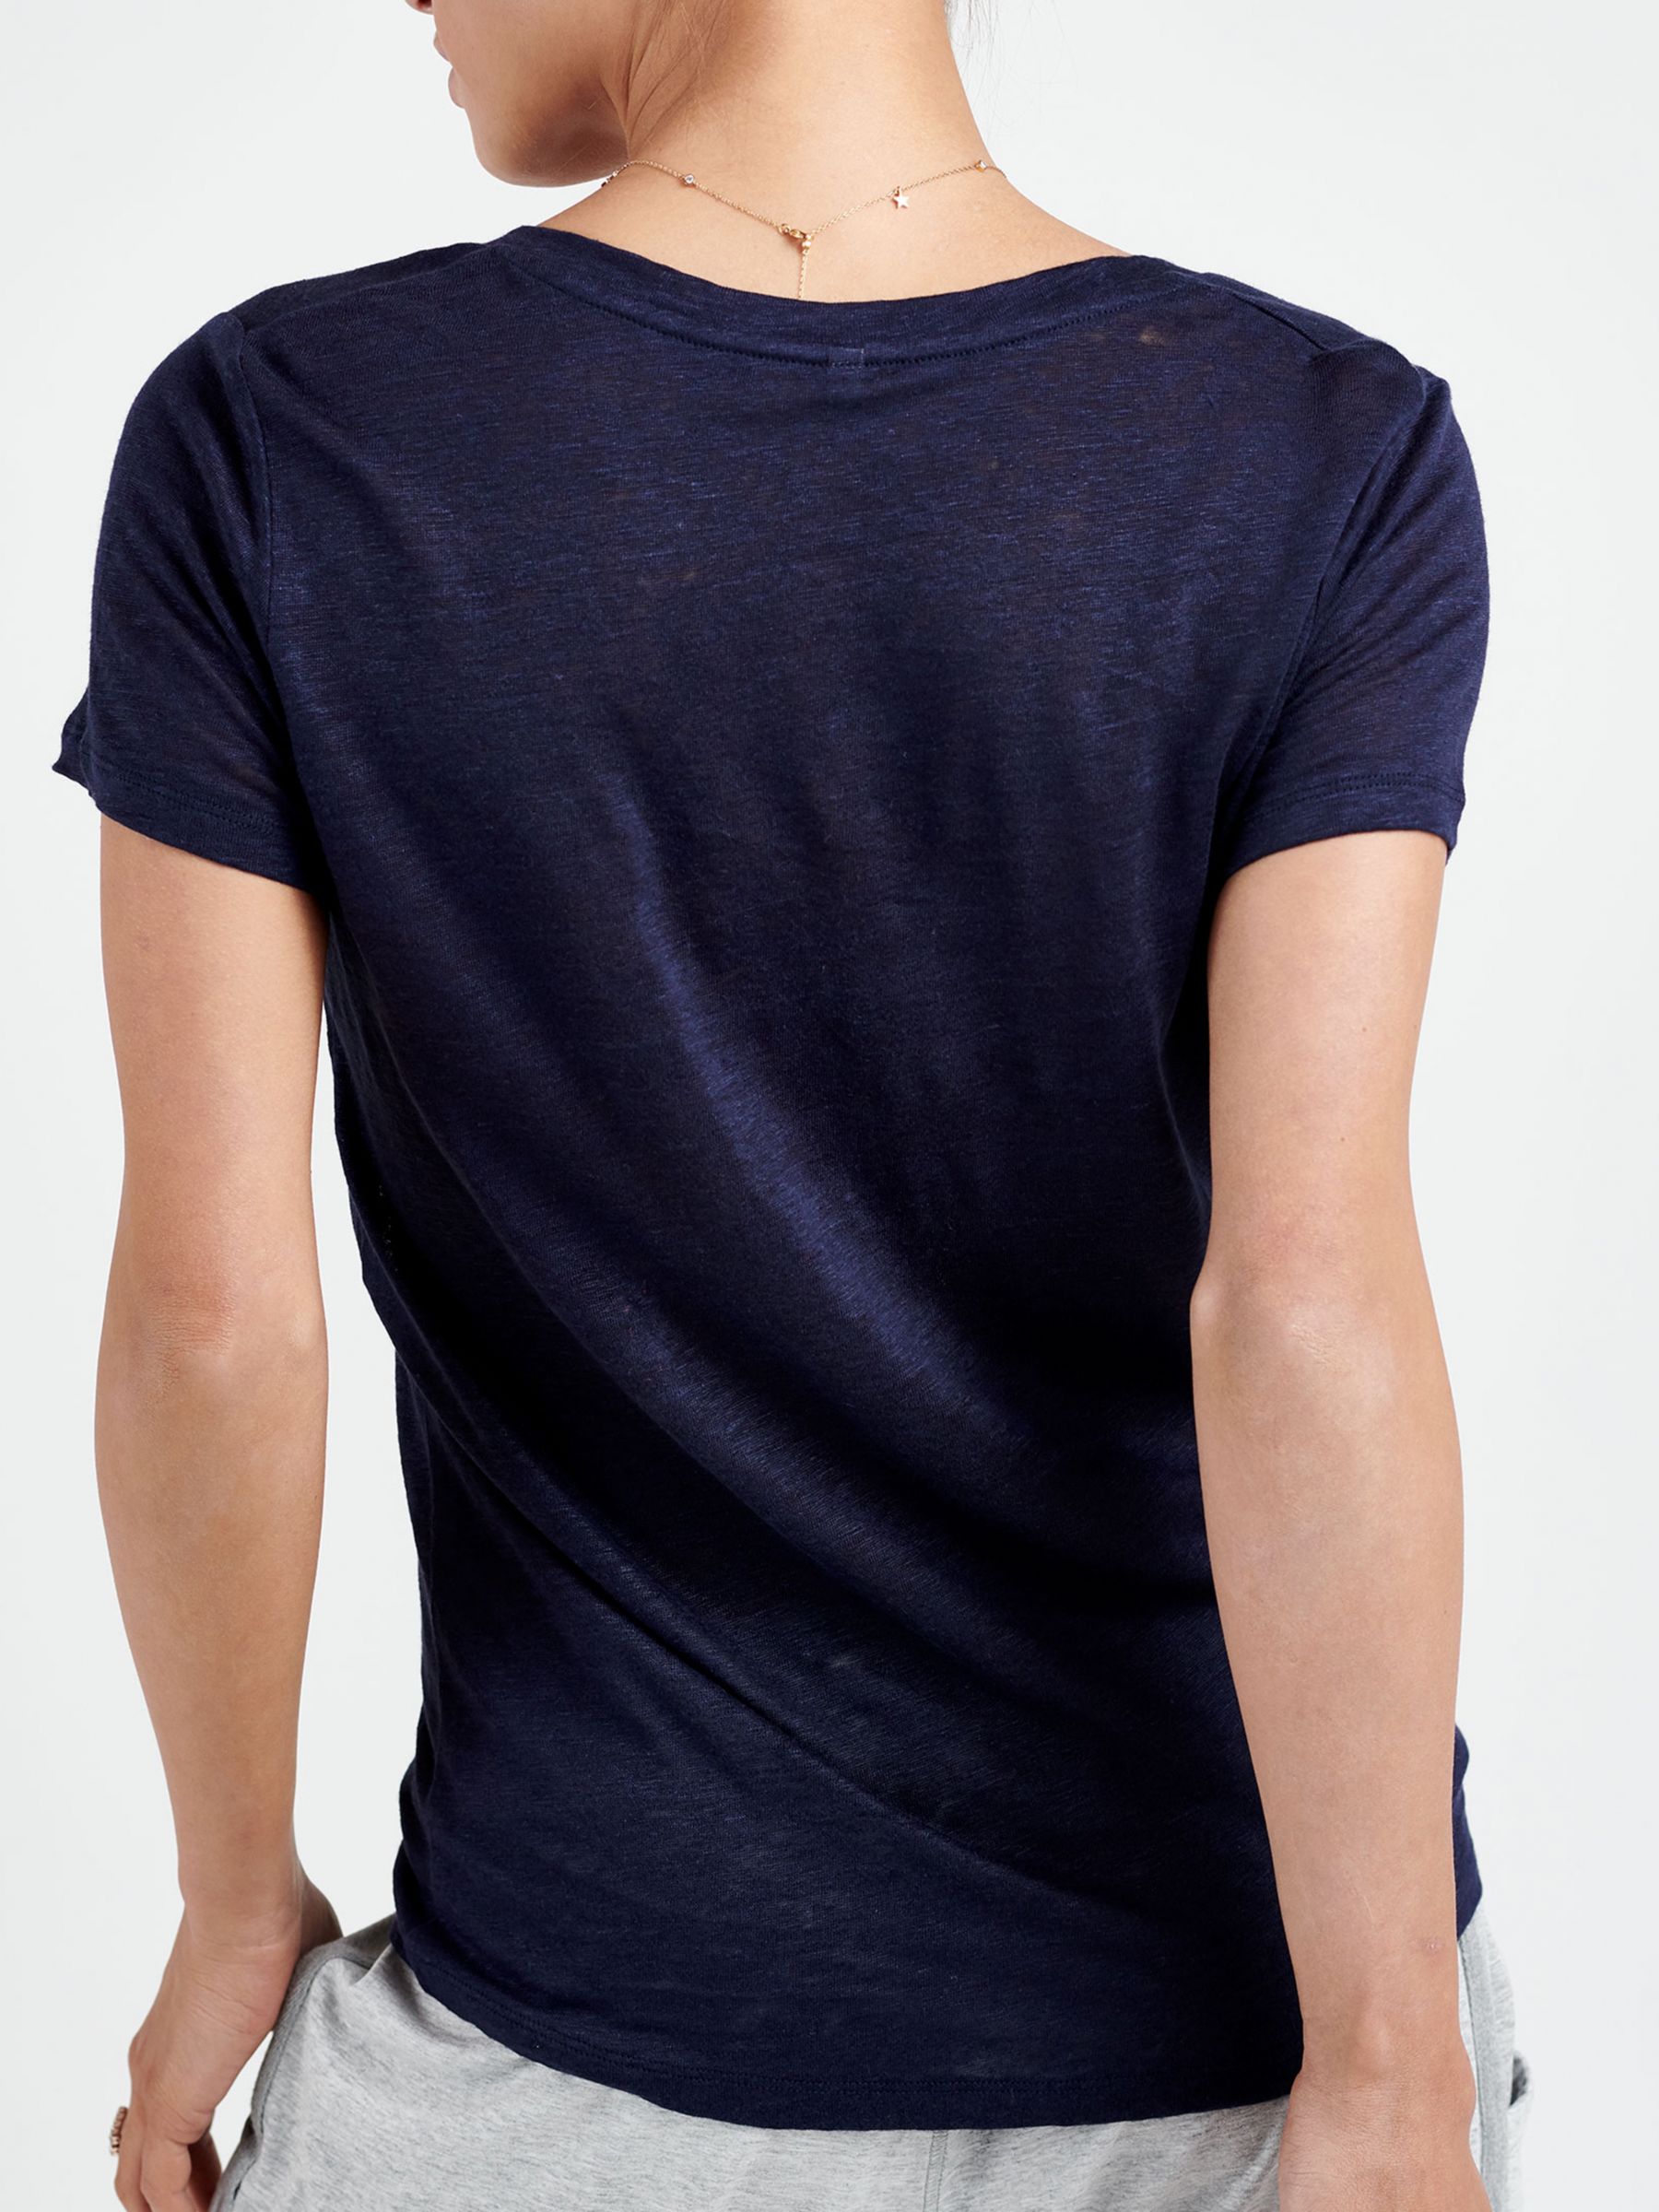 Buy NRBY Charlie V-Neck Linen T-Shirt Online at johnlewis.com